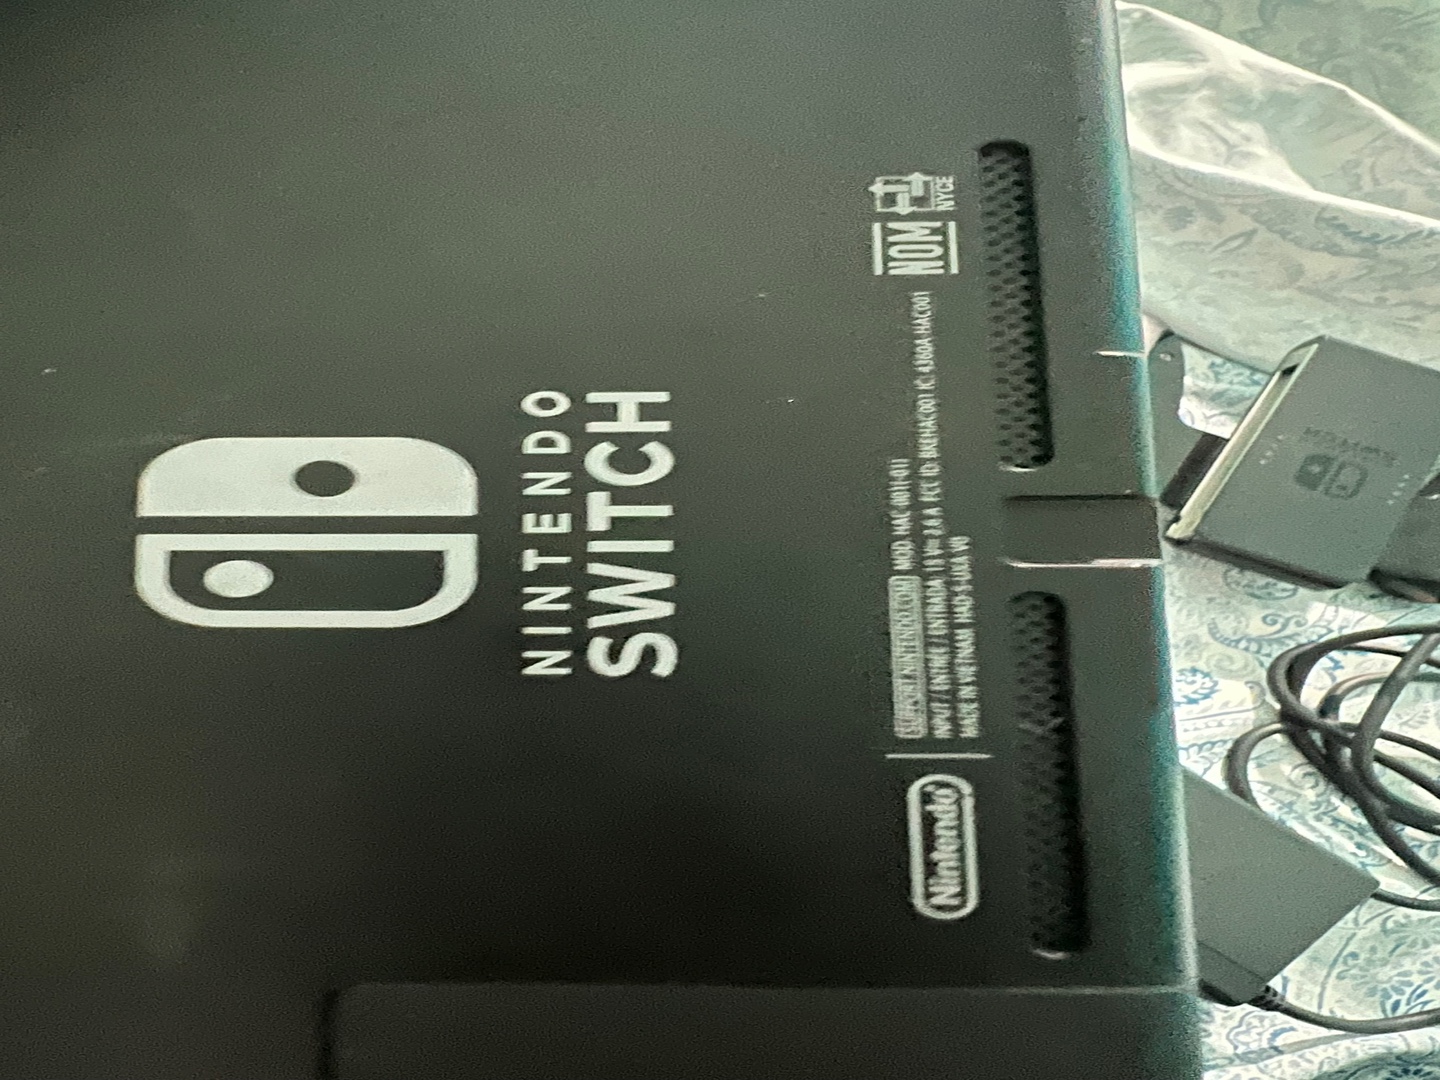 consolas y videojuegos - Nintendo swif 1